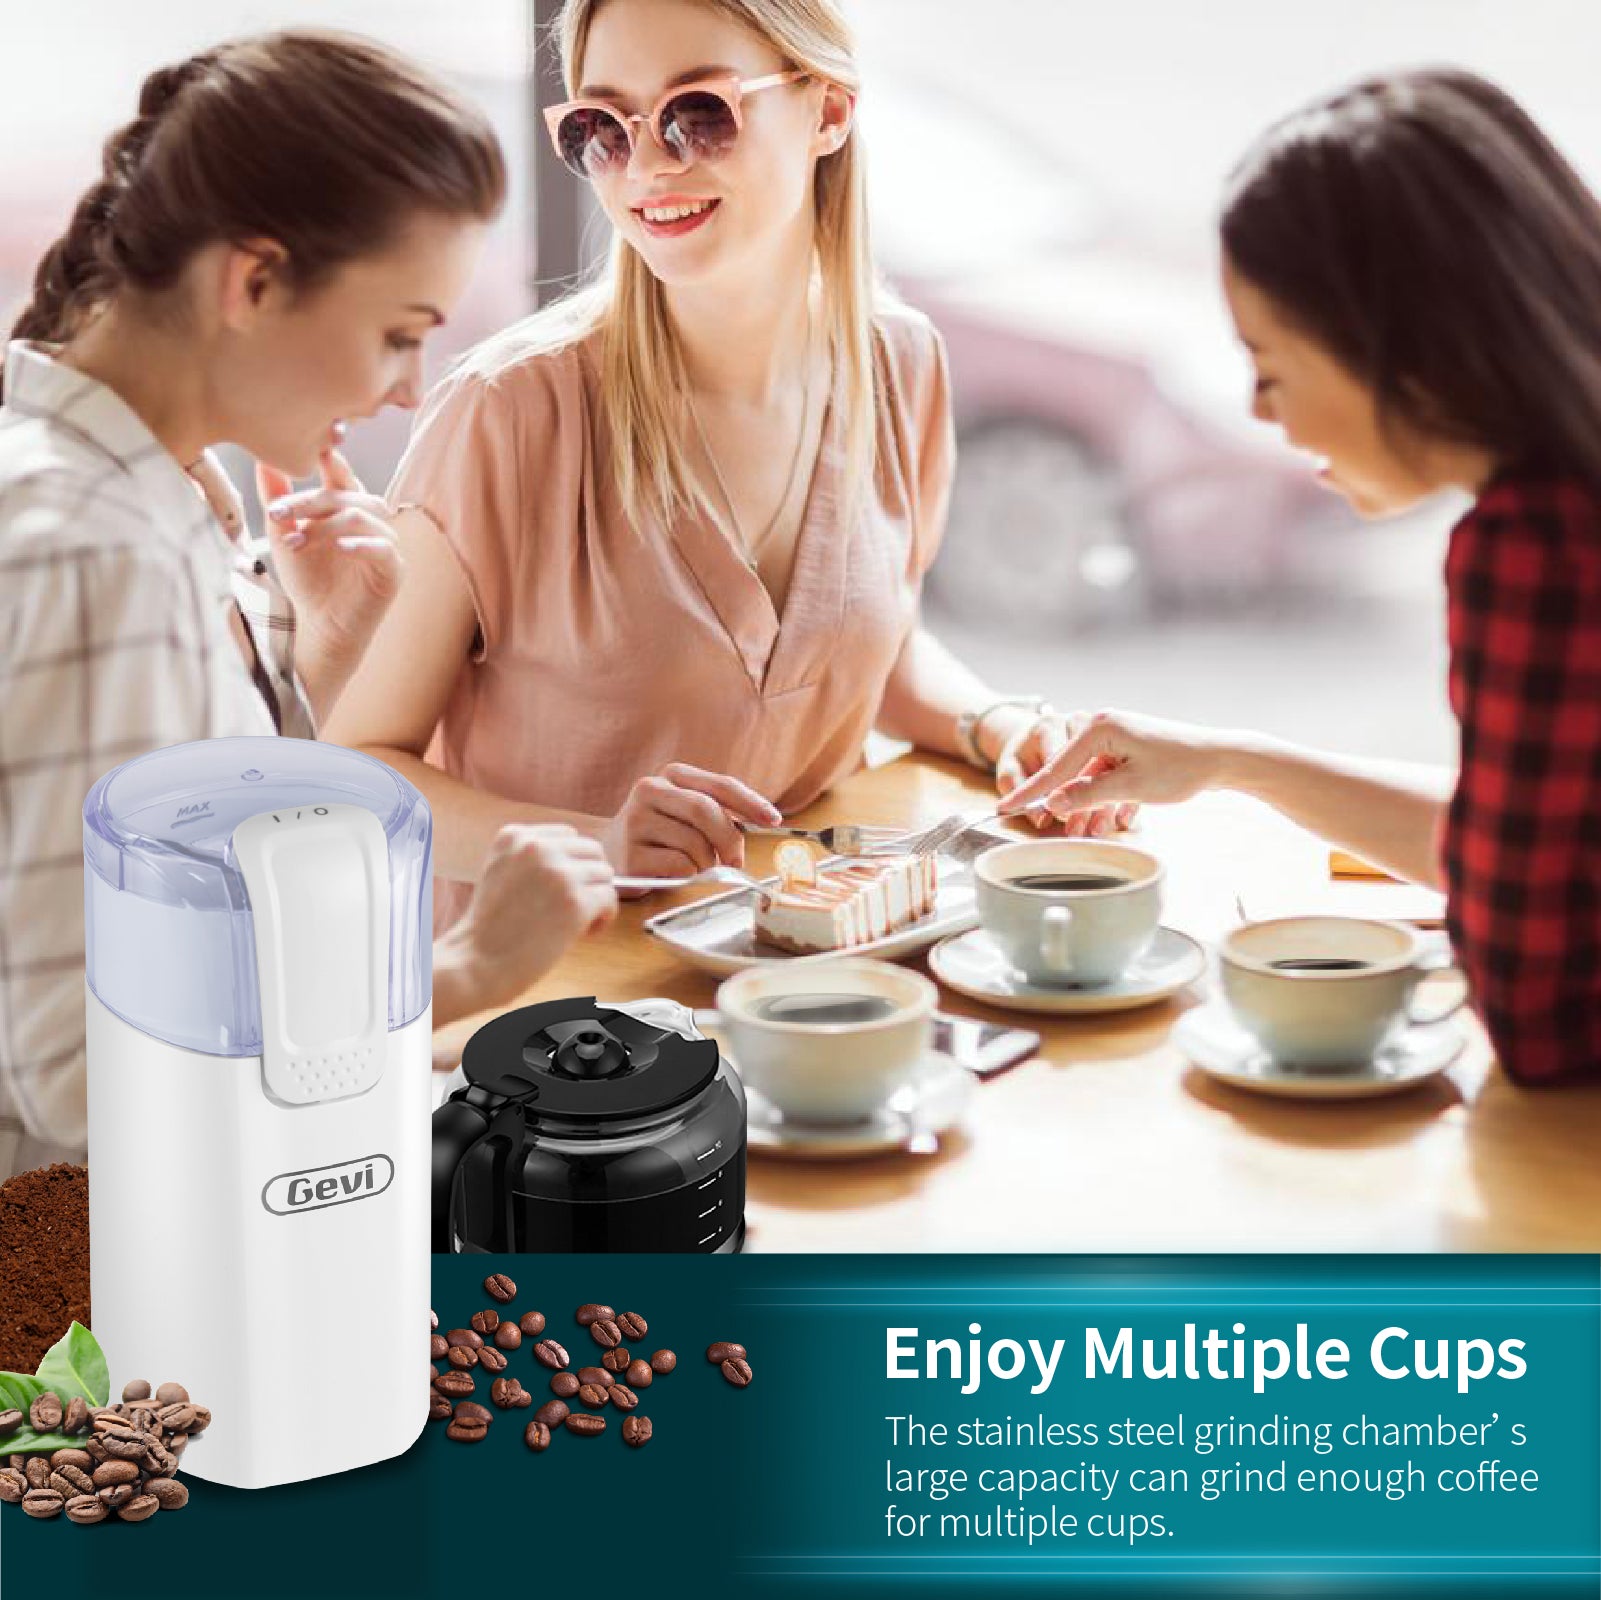 Willz Coffee Grinder WLCG06S1E02 – Willz Appliances